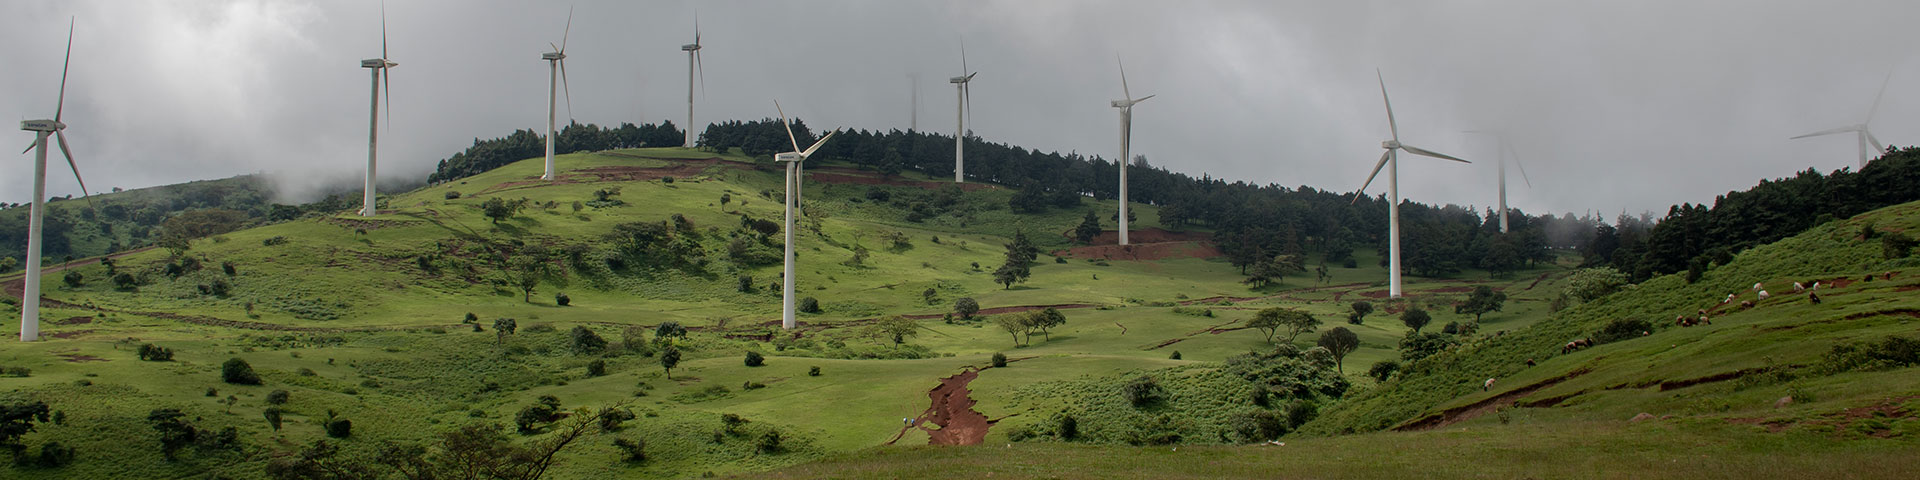 Wind turbines on a green hill